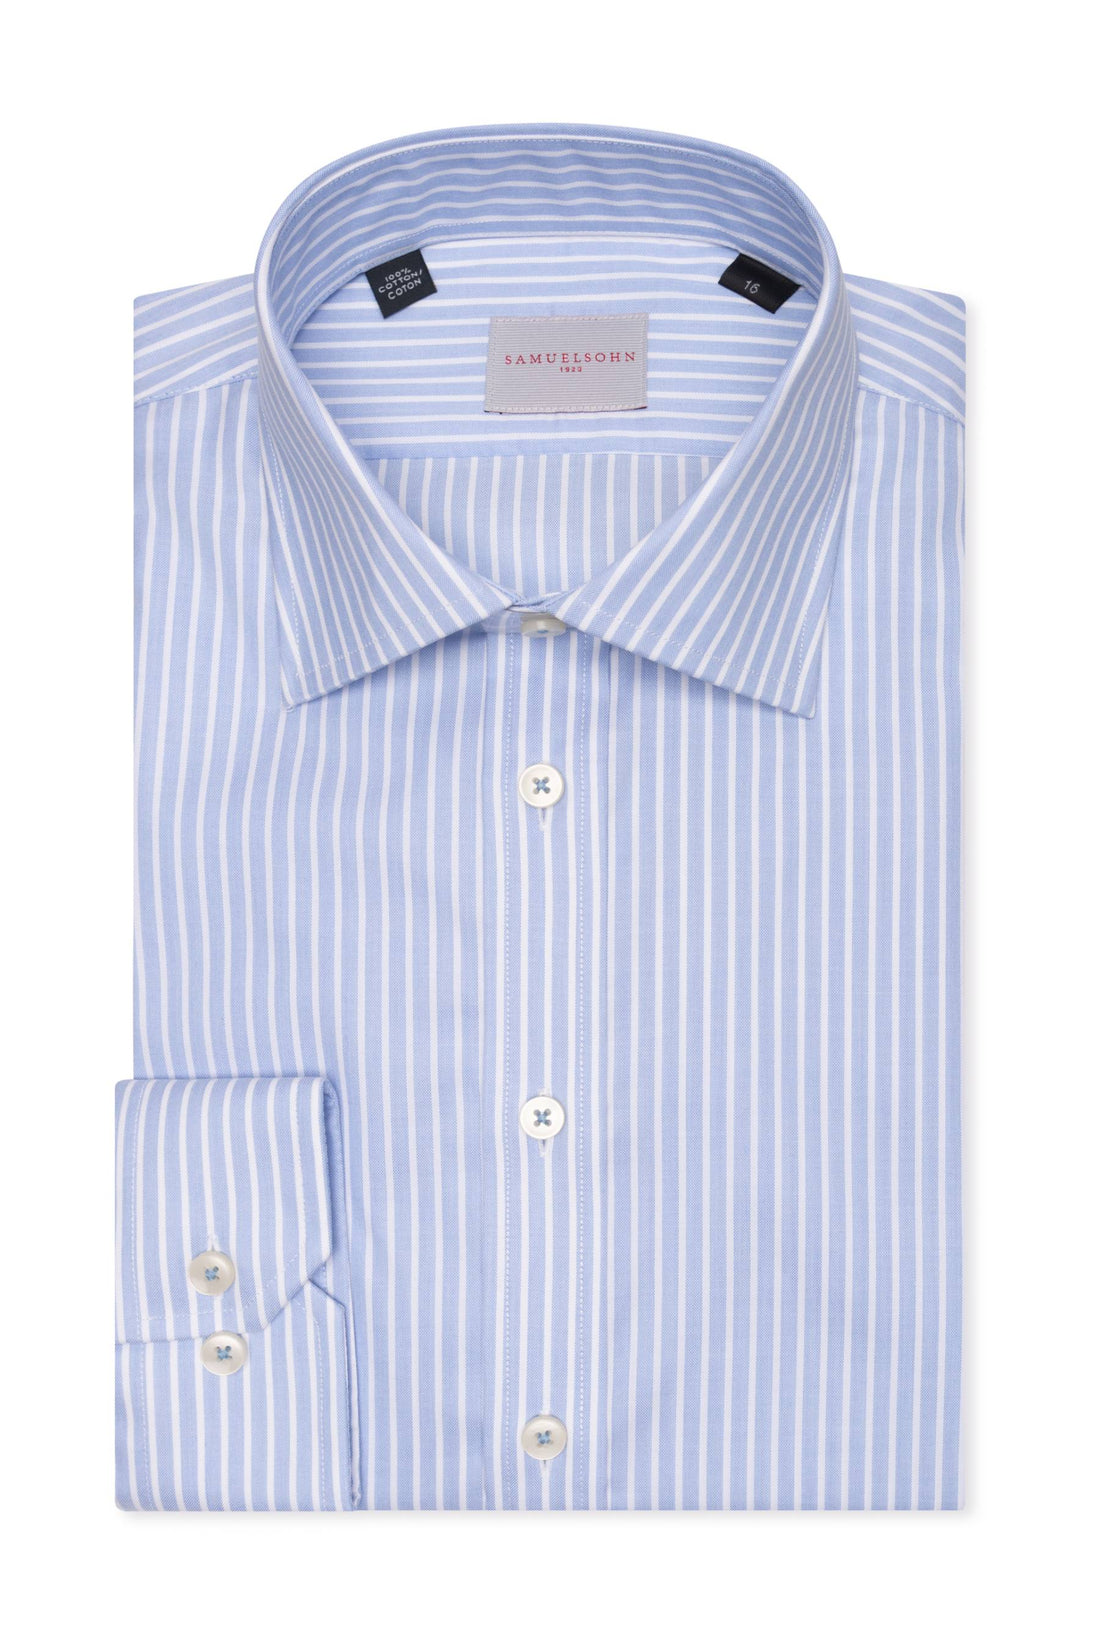 Samuelsohn Blue Stripe Contemporary Fit Easy Care Shirt